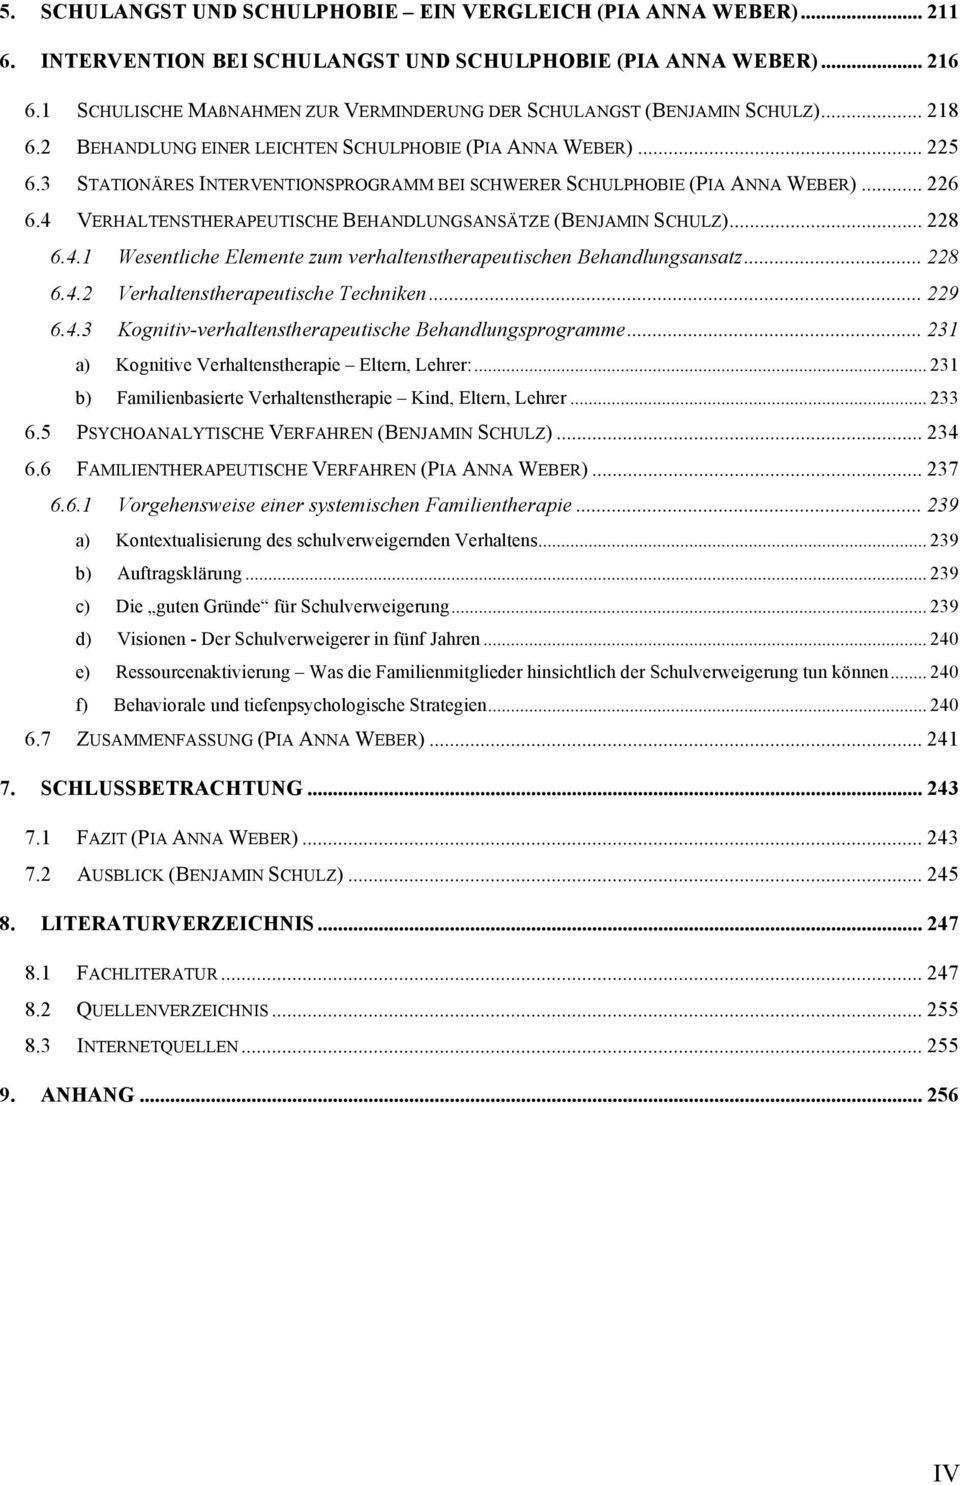 3 STATIONÄRES INTERVENTIONSPROGRAMM BEI SCHWERER SCHULPHOBIE (PIA ANNA WEBER)... 226 6.4 VERHALTENSTHERAPEUTISCHE BEHANDLUNGSANSÄTZE (BENJAMIN SCHULZ)... 228 6.4.1 Wesentliche Elemente zum verhaltenstherapeutischen Behandlungsansatz.